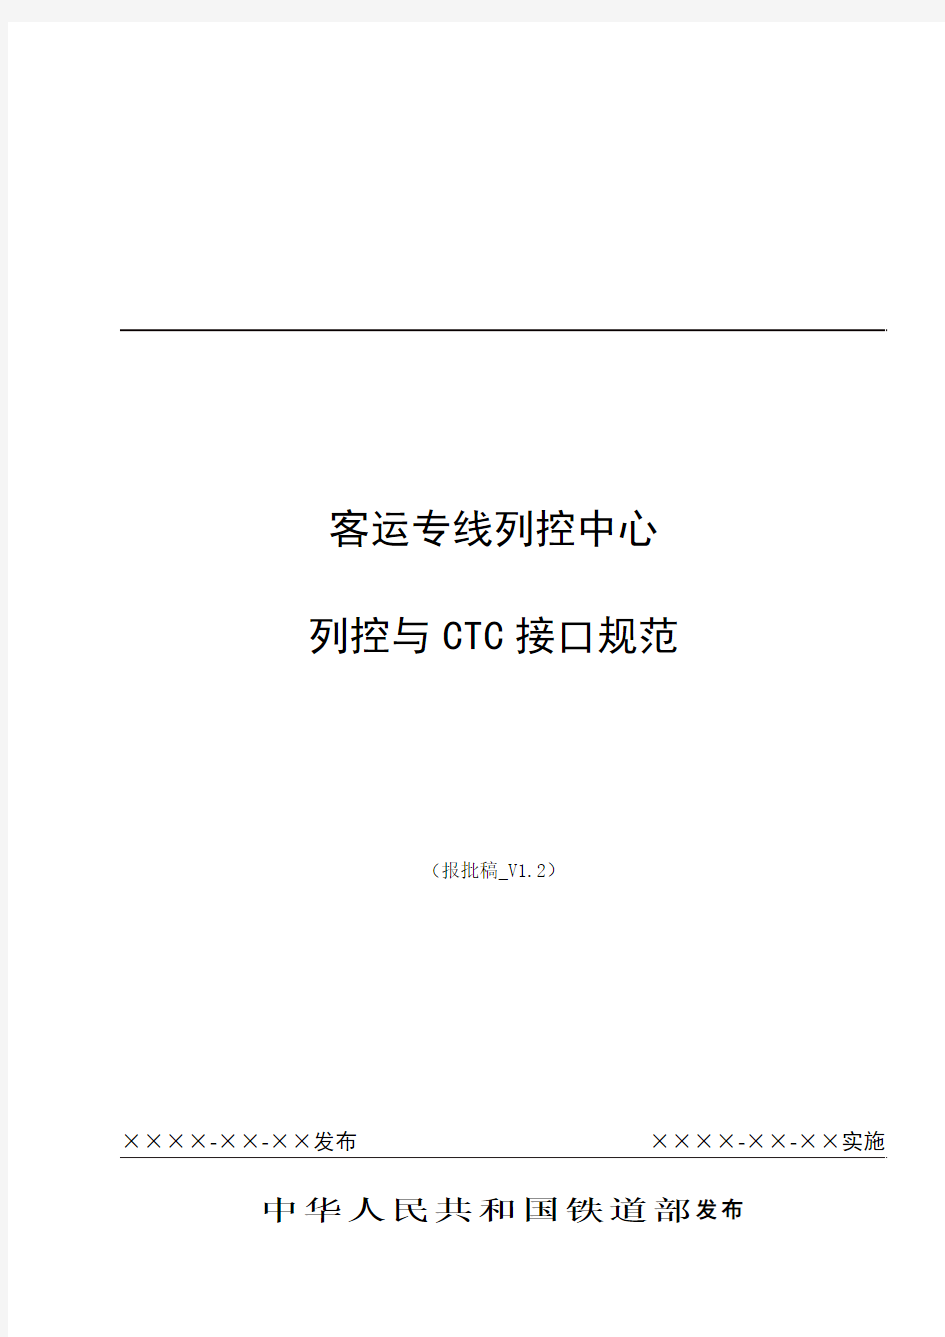 客专列控中心与CTC接口规范(报批稿)_V1.2